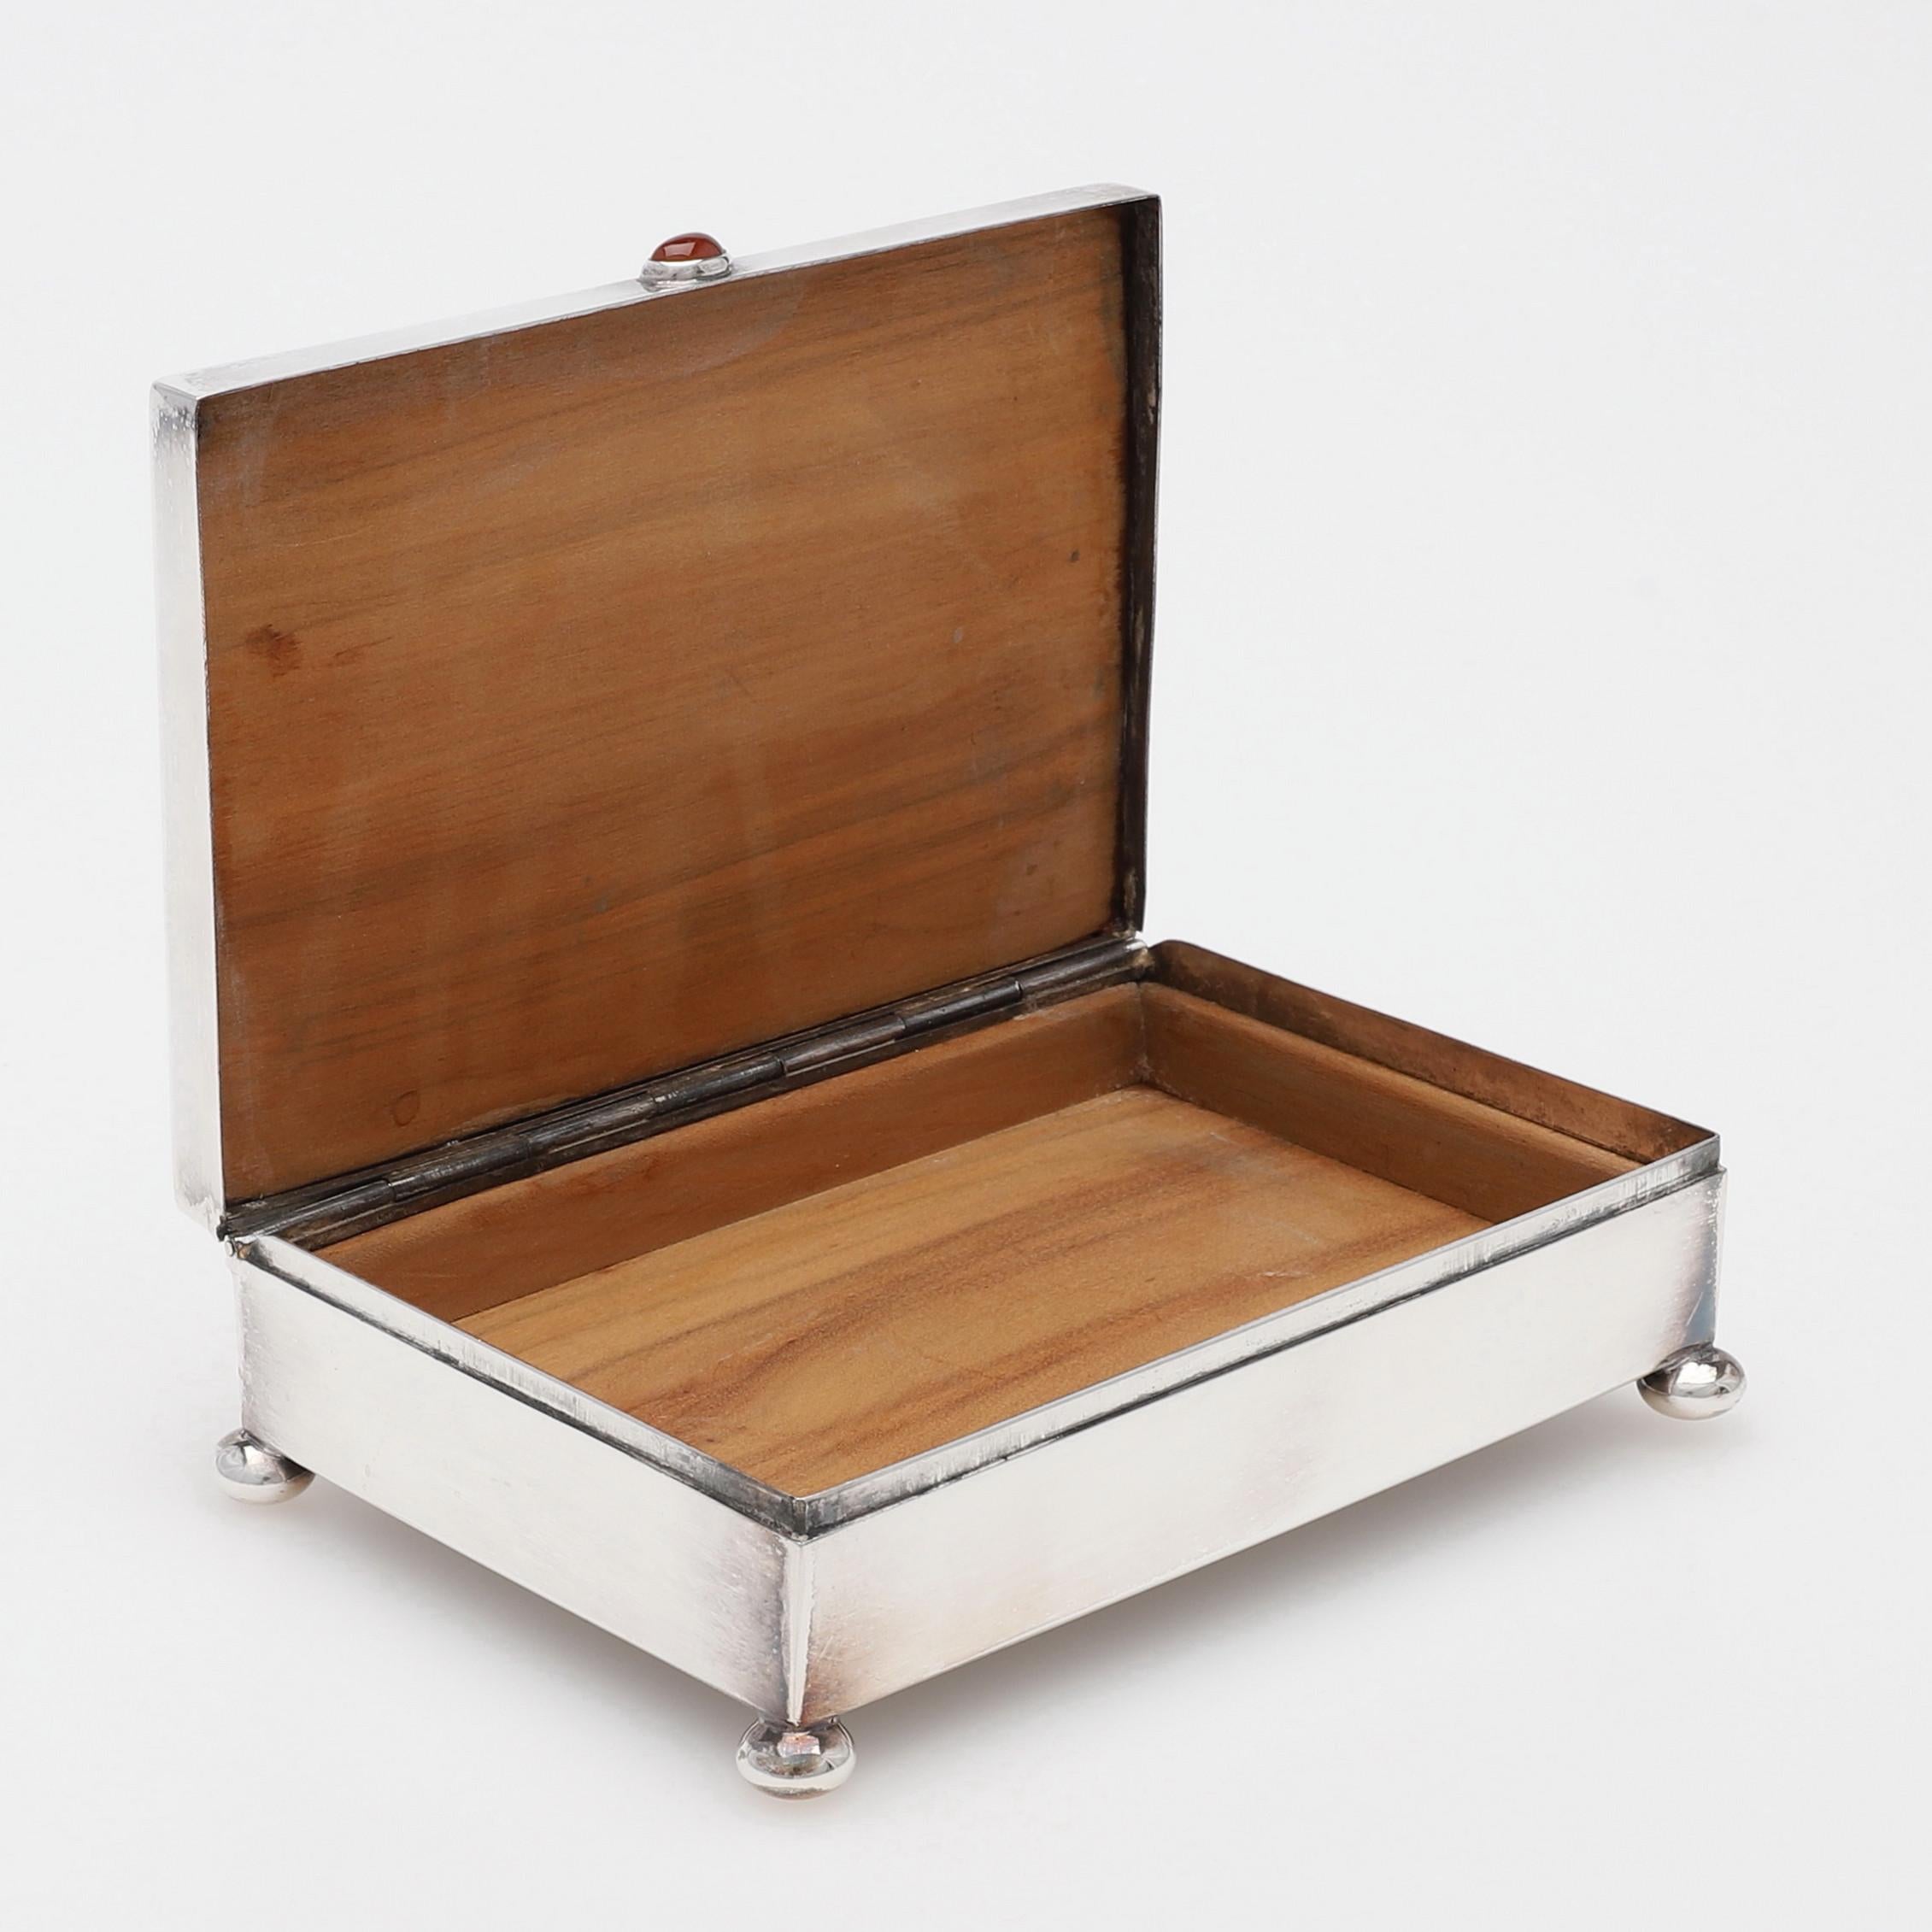 Eine silberne Schachtel mit  mit rotem Stein auf dem Deckel  , innen Zedernholz, Höhe ca. 4 cm, Länge ca. 12,5x8,5cm. Markiert 